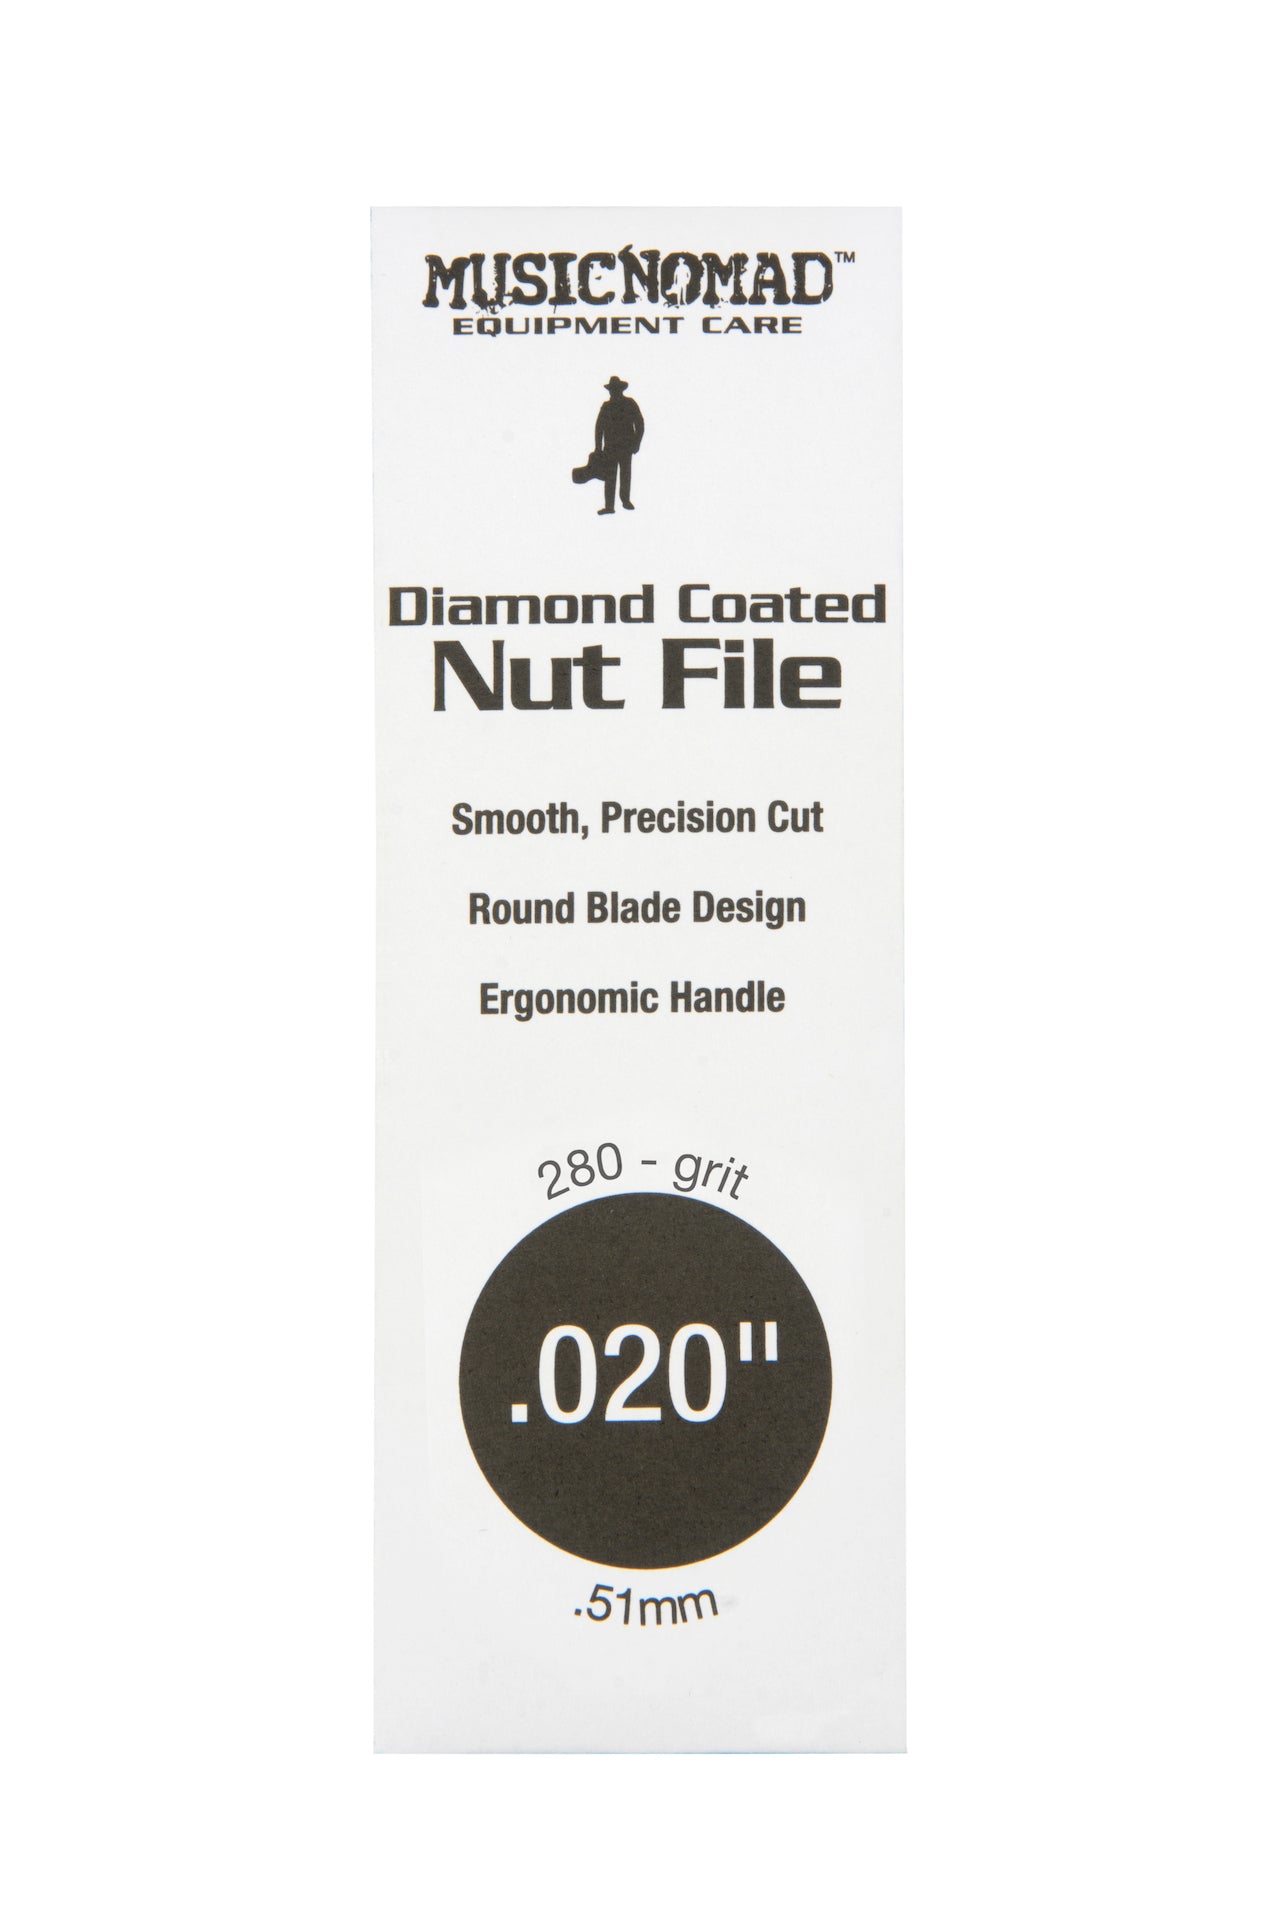 Music Nomad Diamond Coated Nut File Singles - HIENDGUITAR .020" .020" musicnomad musicnomad